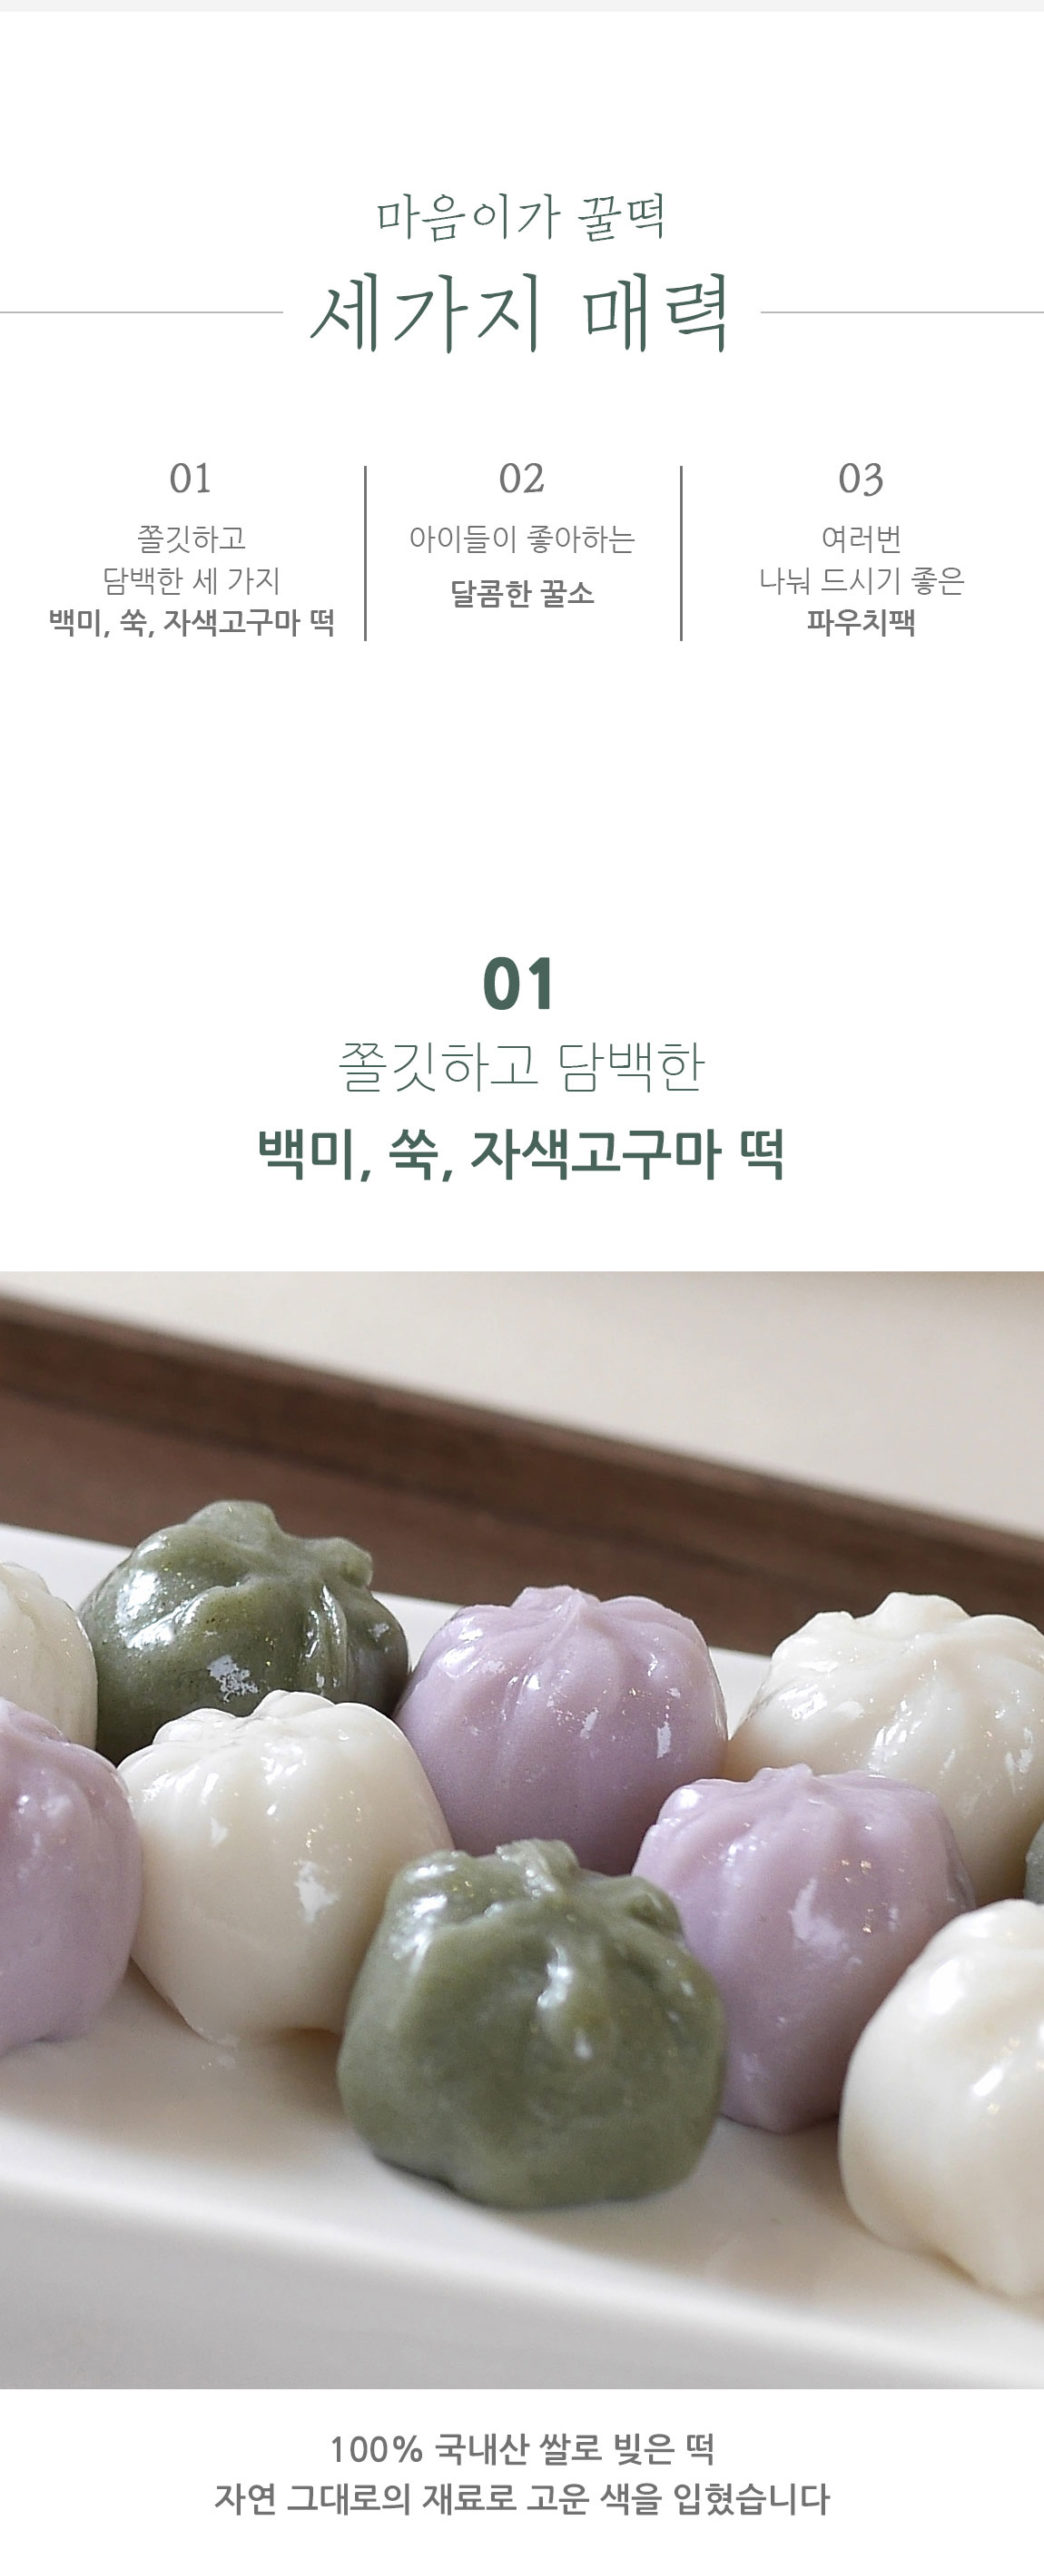 韓國食品-[Maumiga] Honey Rice Cake 350g